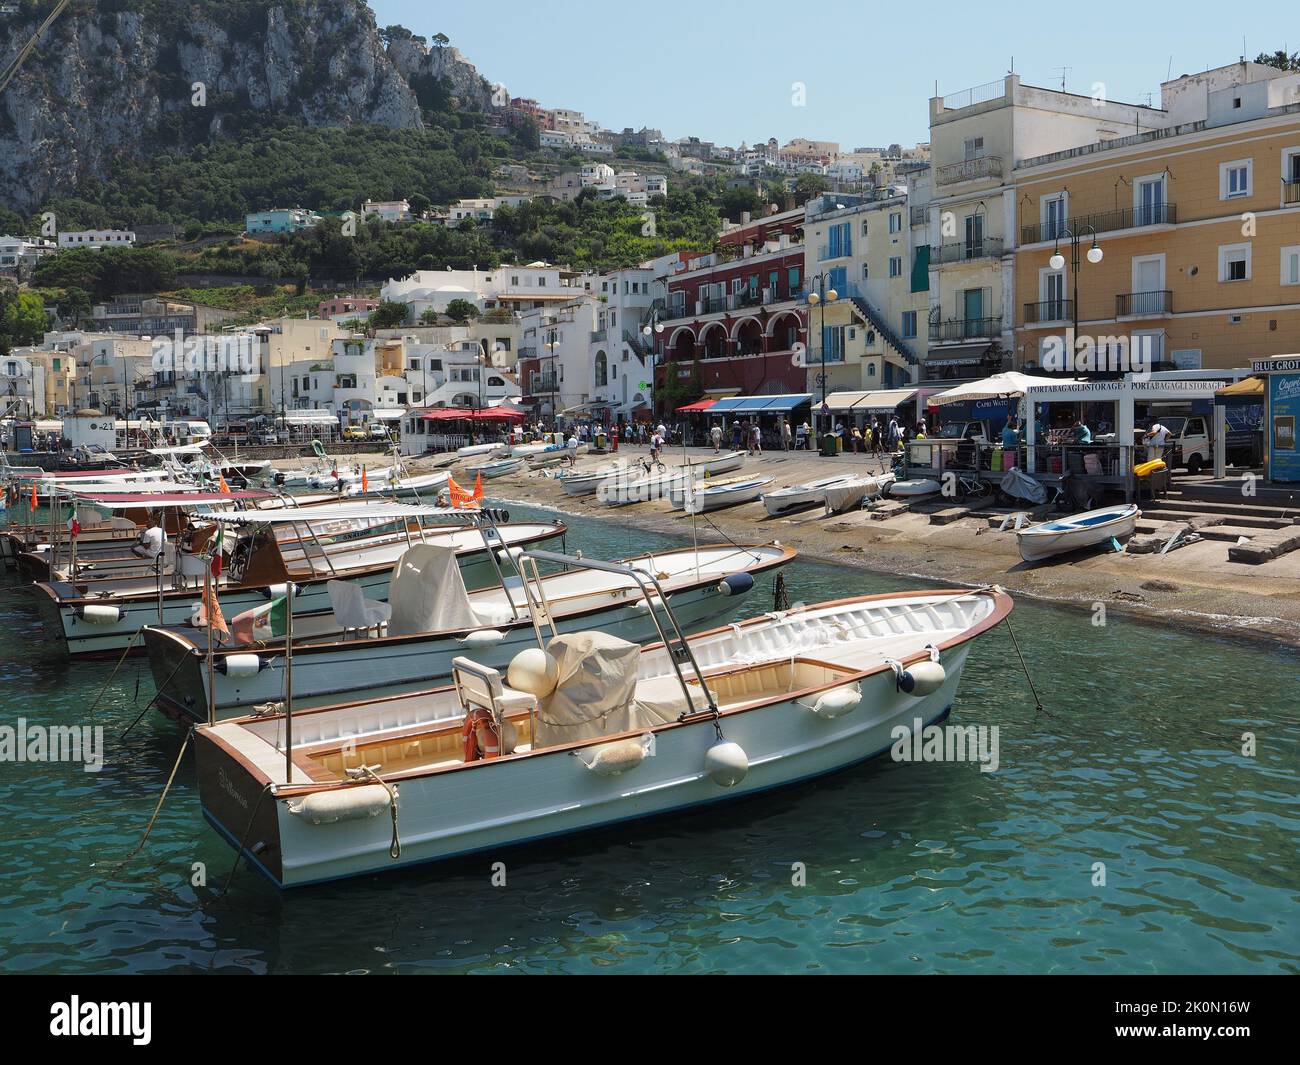 Port de Capri avec de nombreux bateaux touristiques qui sont utilisés pour visiter la grotte azzurro ou tour autour de l'île. Capri, Campanie, Italie Banque D'Images